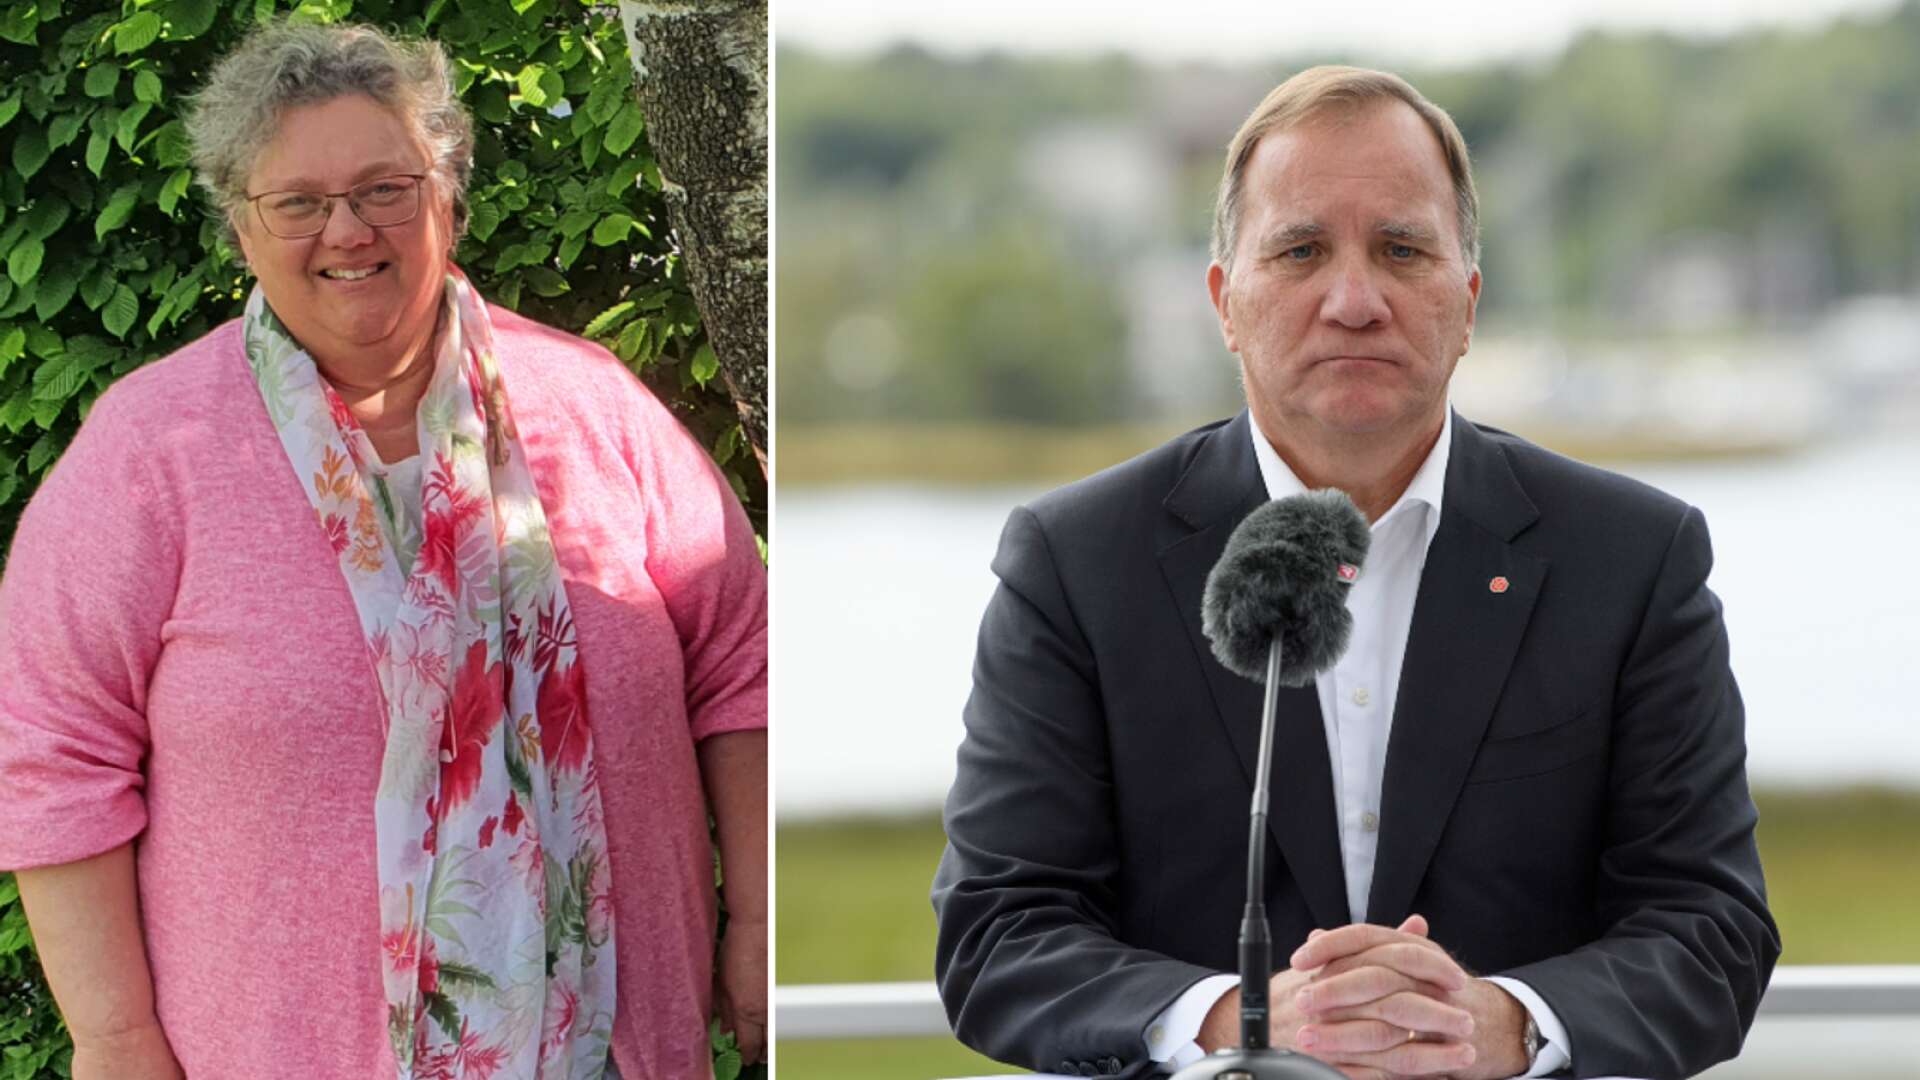 Götenepolitikern Åsa Karlsson lyssnade på statsministerns tal under söndagen och blev minst sagt överraskad när Löfven lämnade sitt besked.